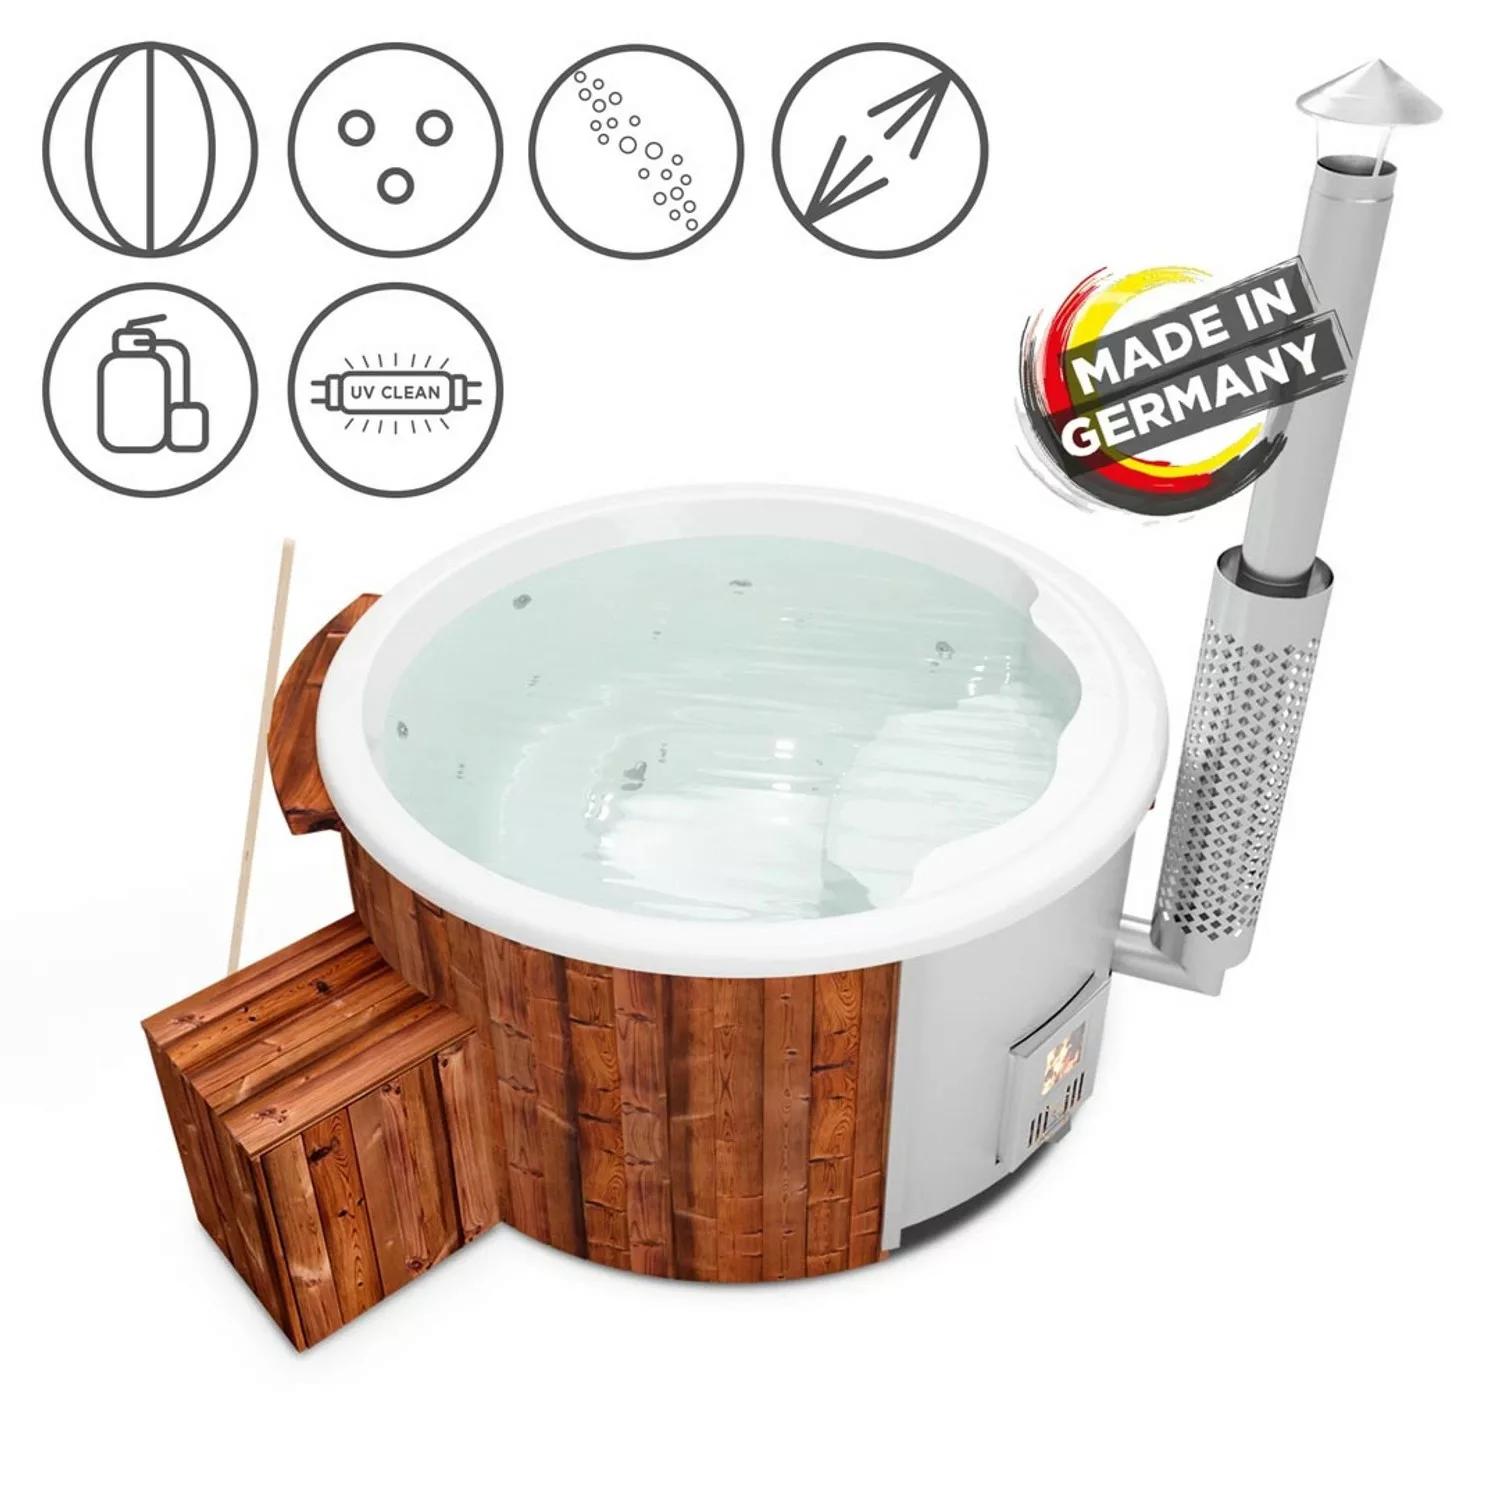 Holzklusiv Hot Tub Saphir 180 Thermoholz Spa Deluxe Clean UV Wanne Weiß günstig online kaufen